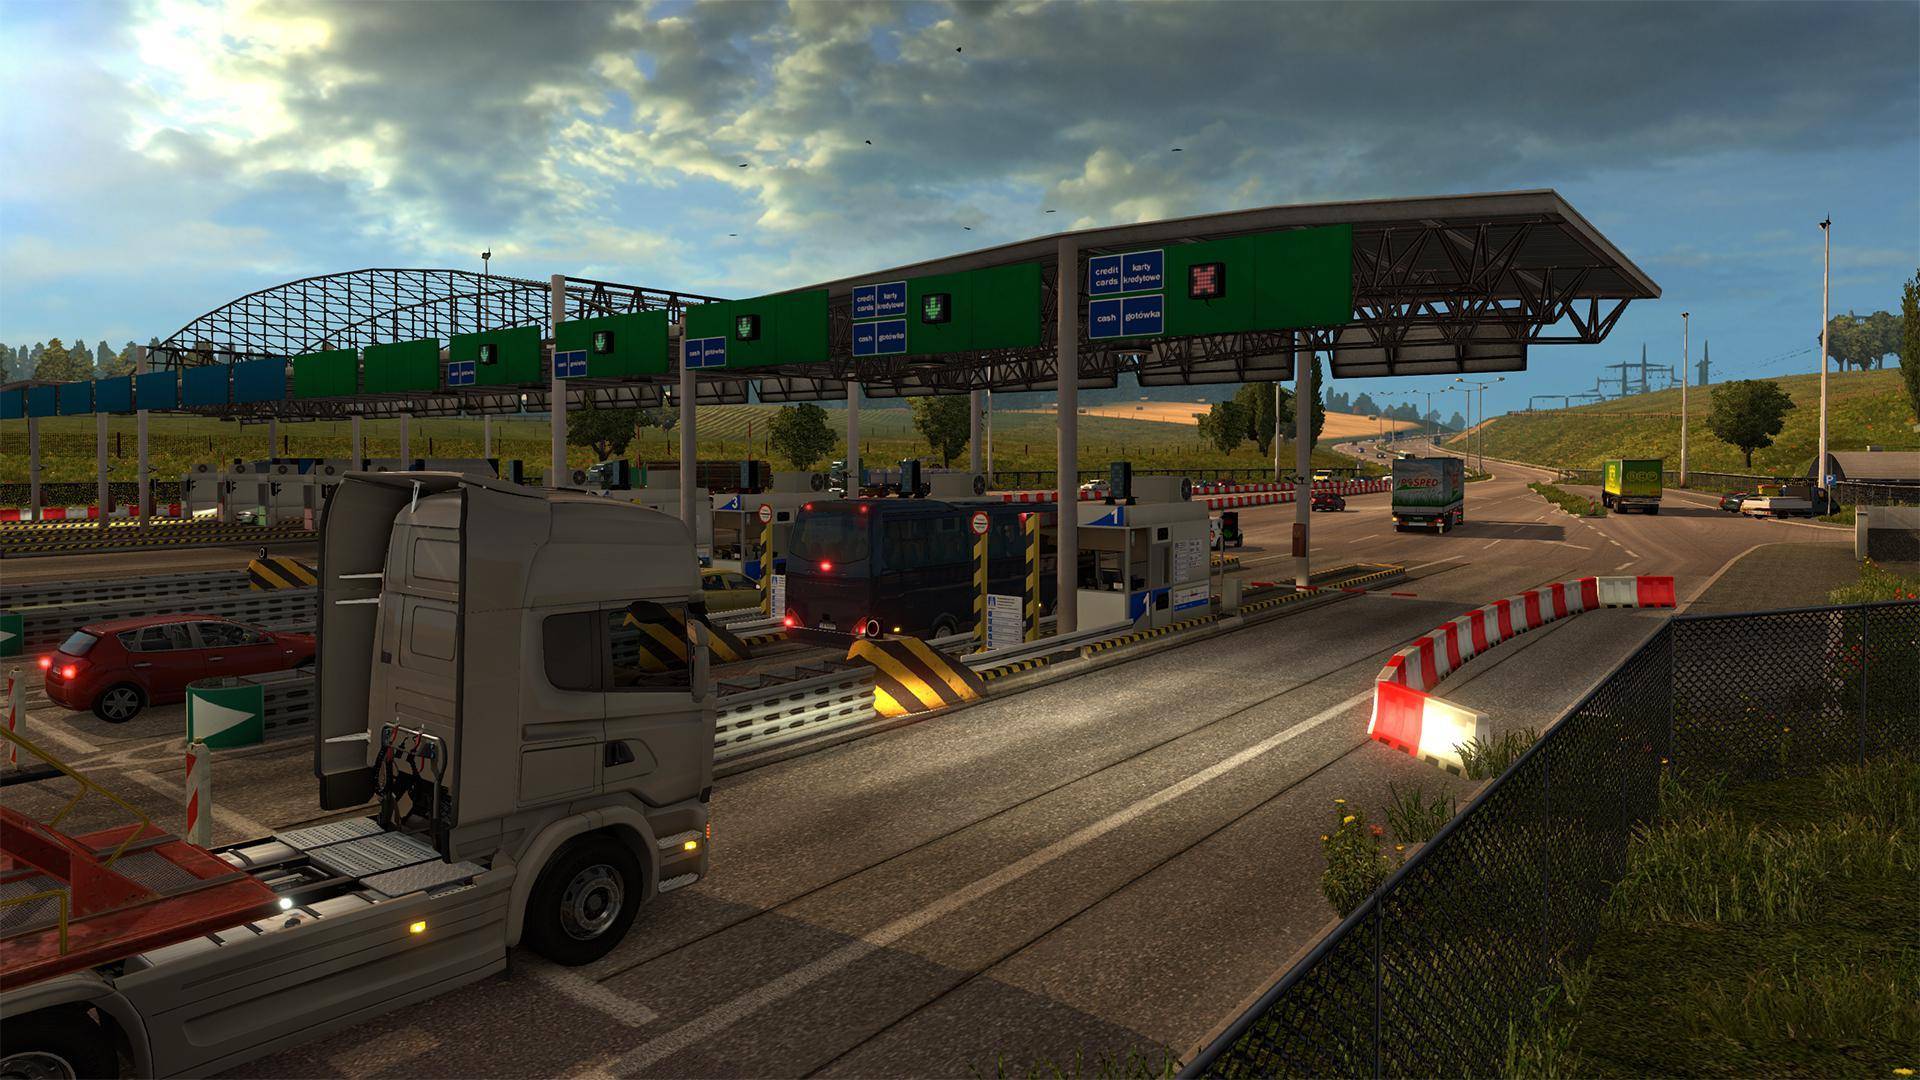 Euro Truck Simulator 2 Download grátis do jogo para PC versão